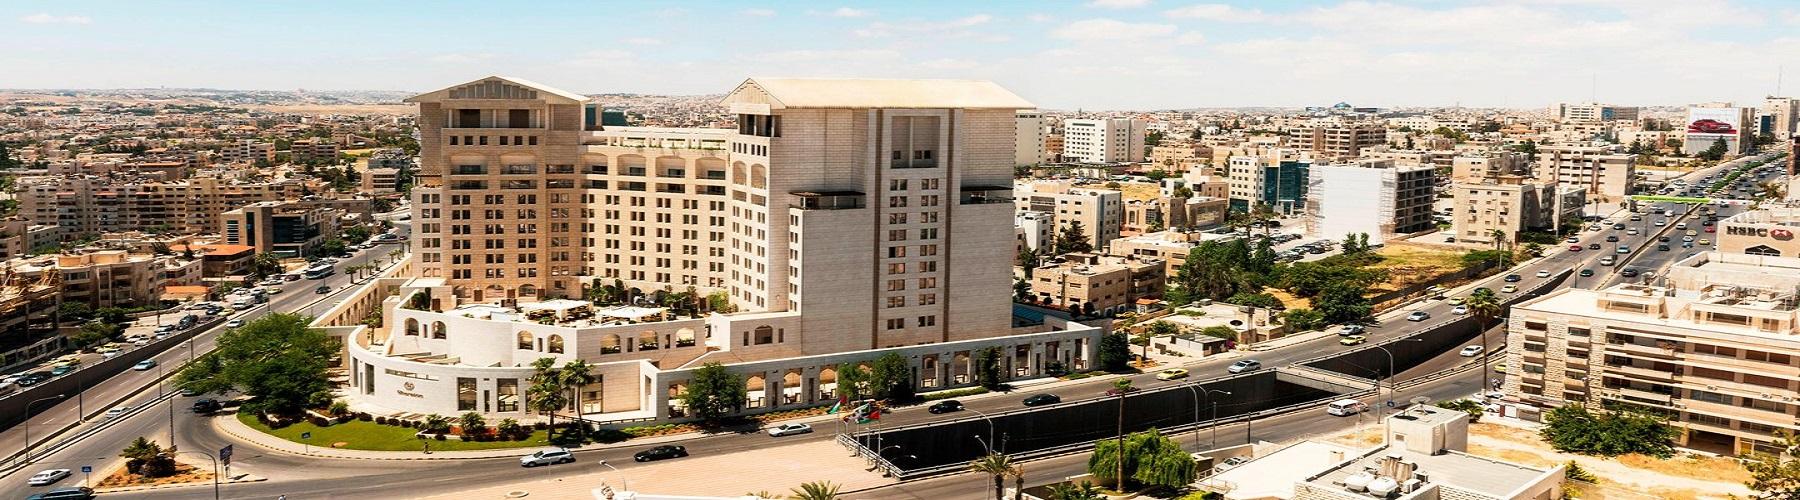 Отель в Аммане The Sheraton Amman Al Nabil Hotel and Towers